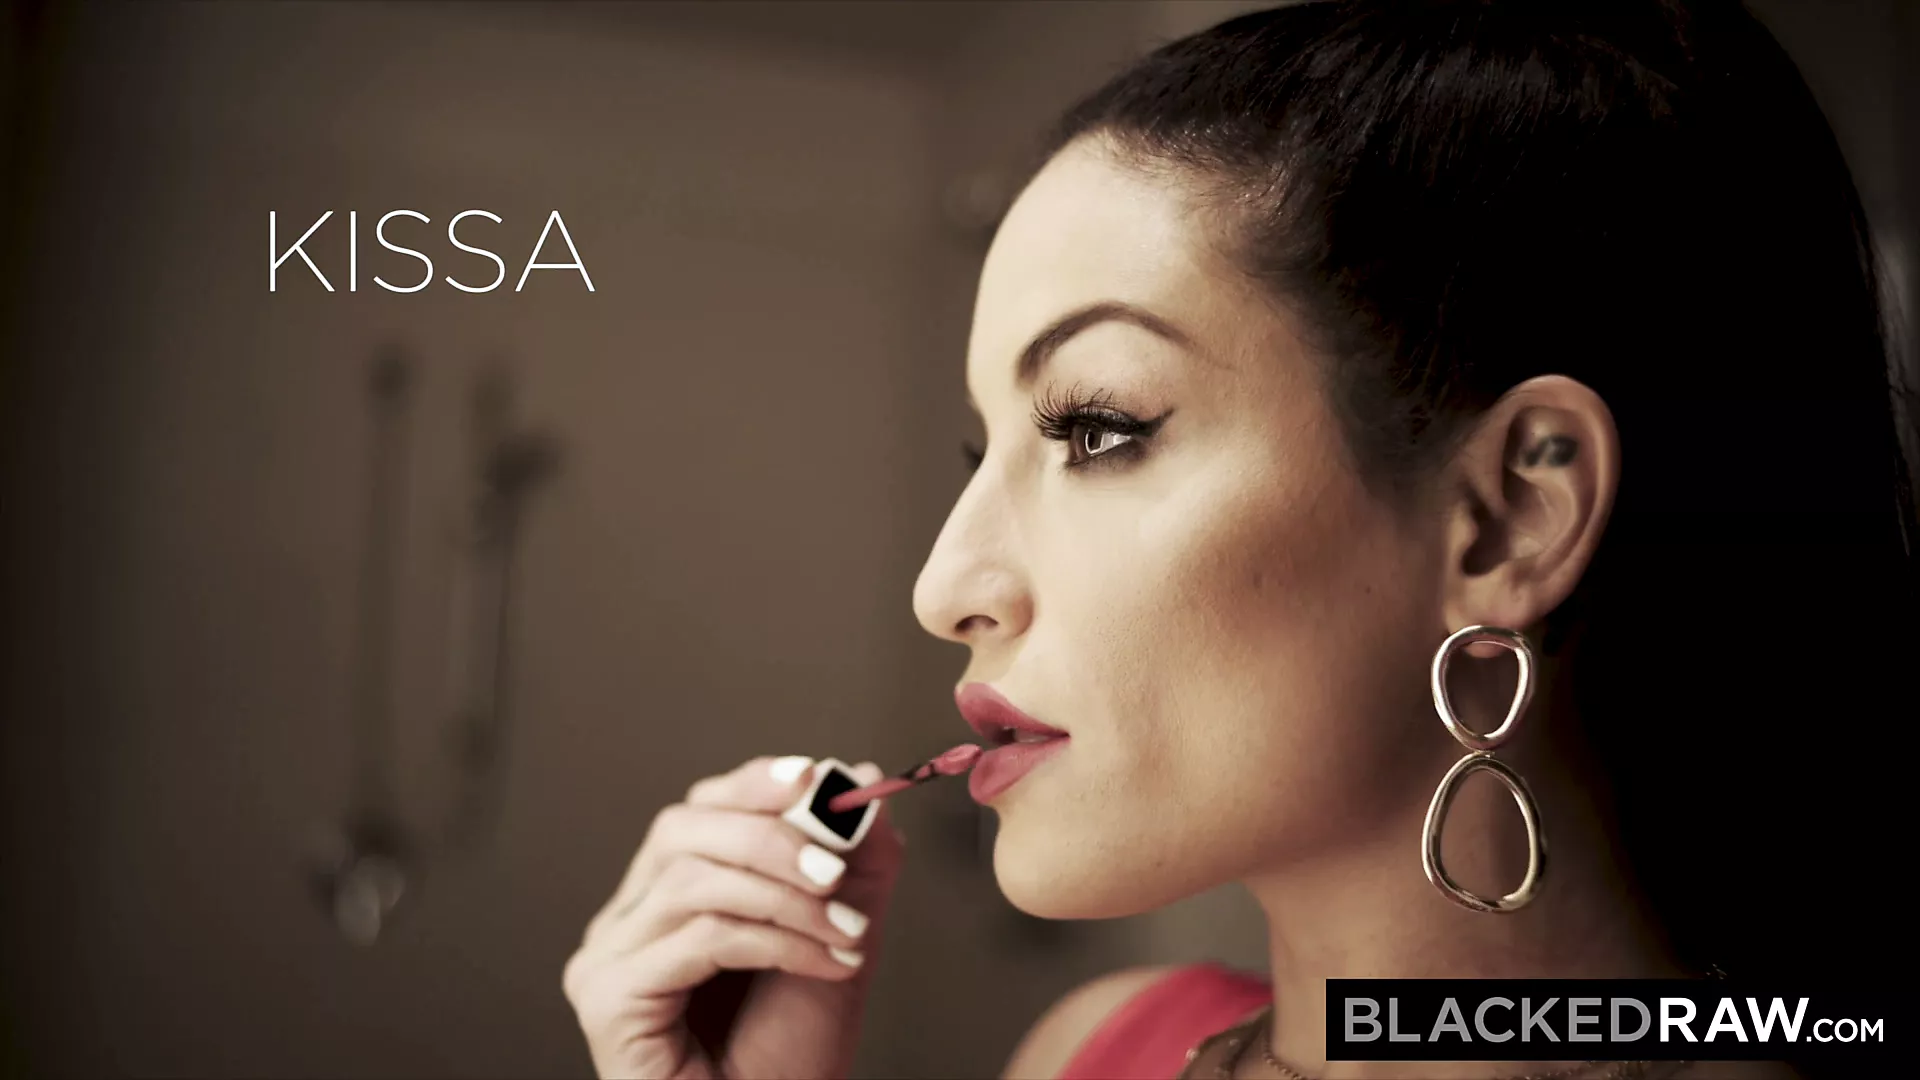 Free watch & Download BLACKEDRAW Kissa Sins Always Gets An Alpha BBC